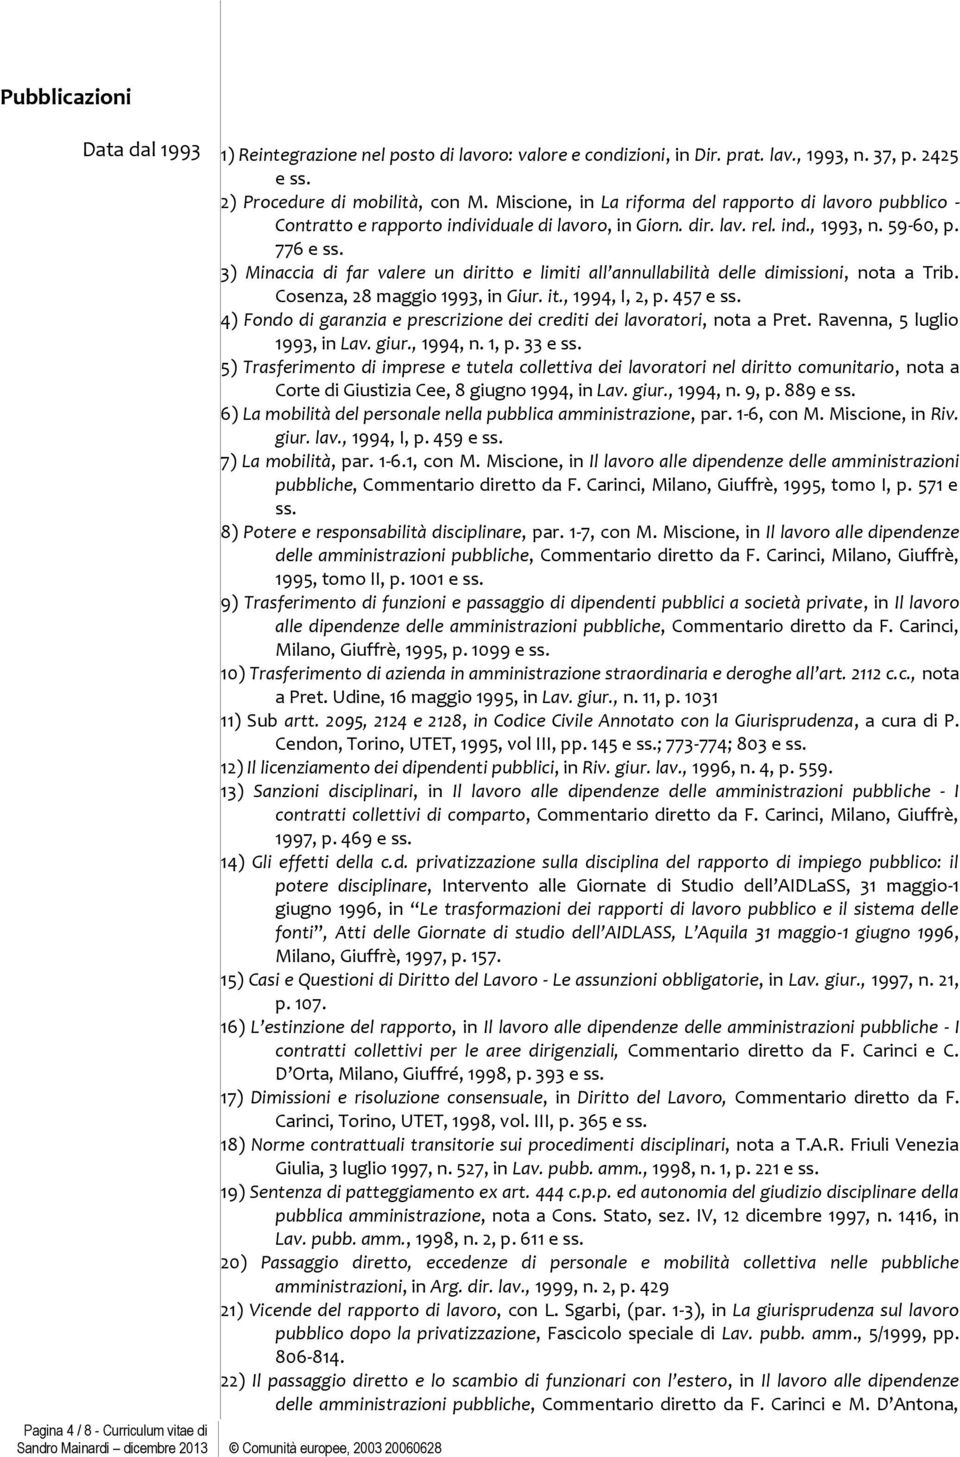 3) Minaccia di far valere un diritto e limiti all annullabilità delle dimissioni, nota a Trib. Cosenza, 28 maggio 1993, in Giur. it., 1994, I, 2, p. 457 e ss.